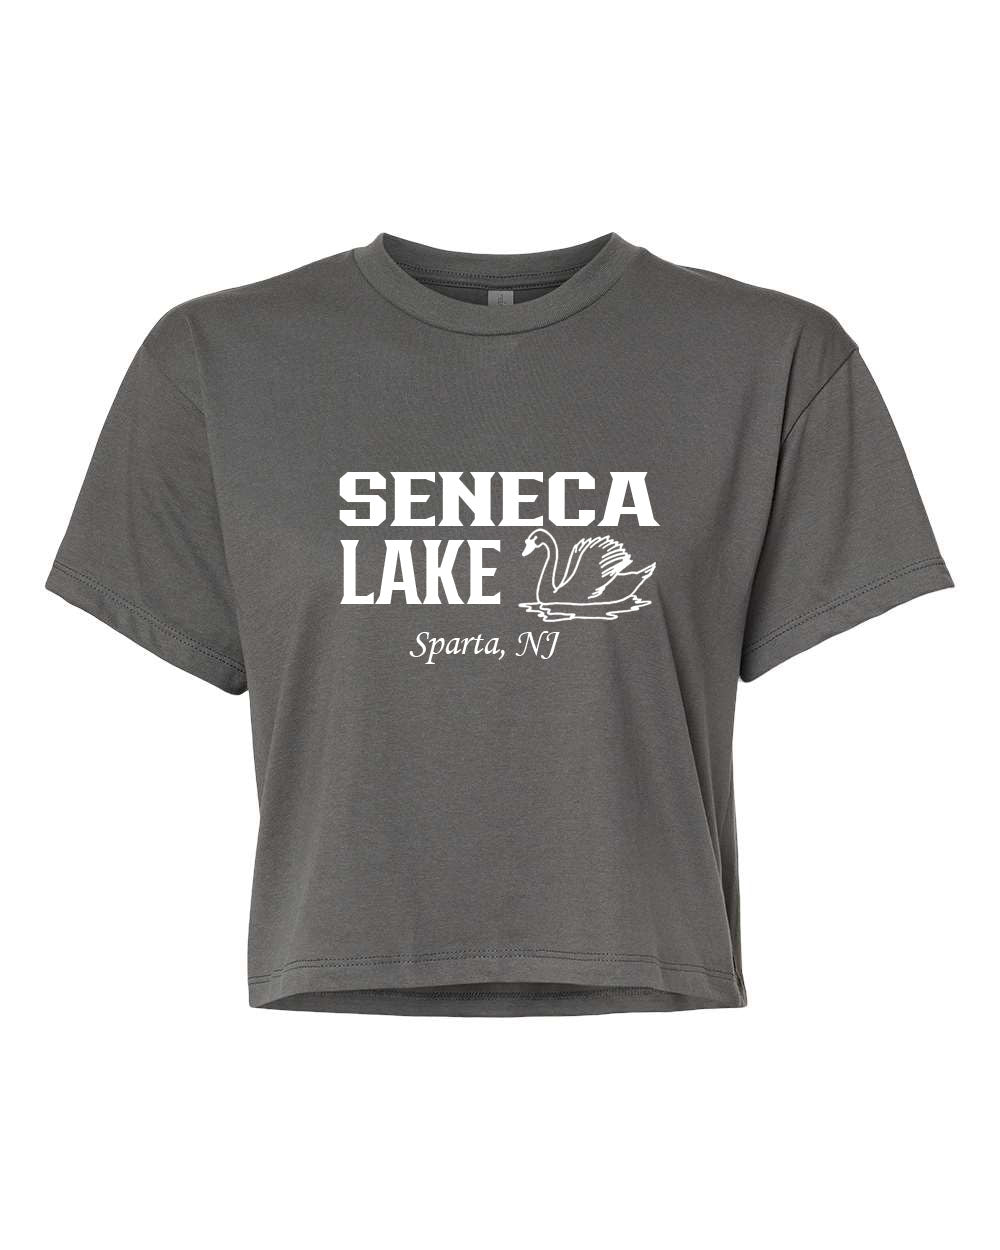 Seneca Lake Design 1 Crop Top